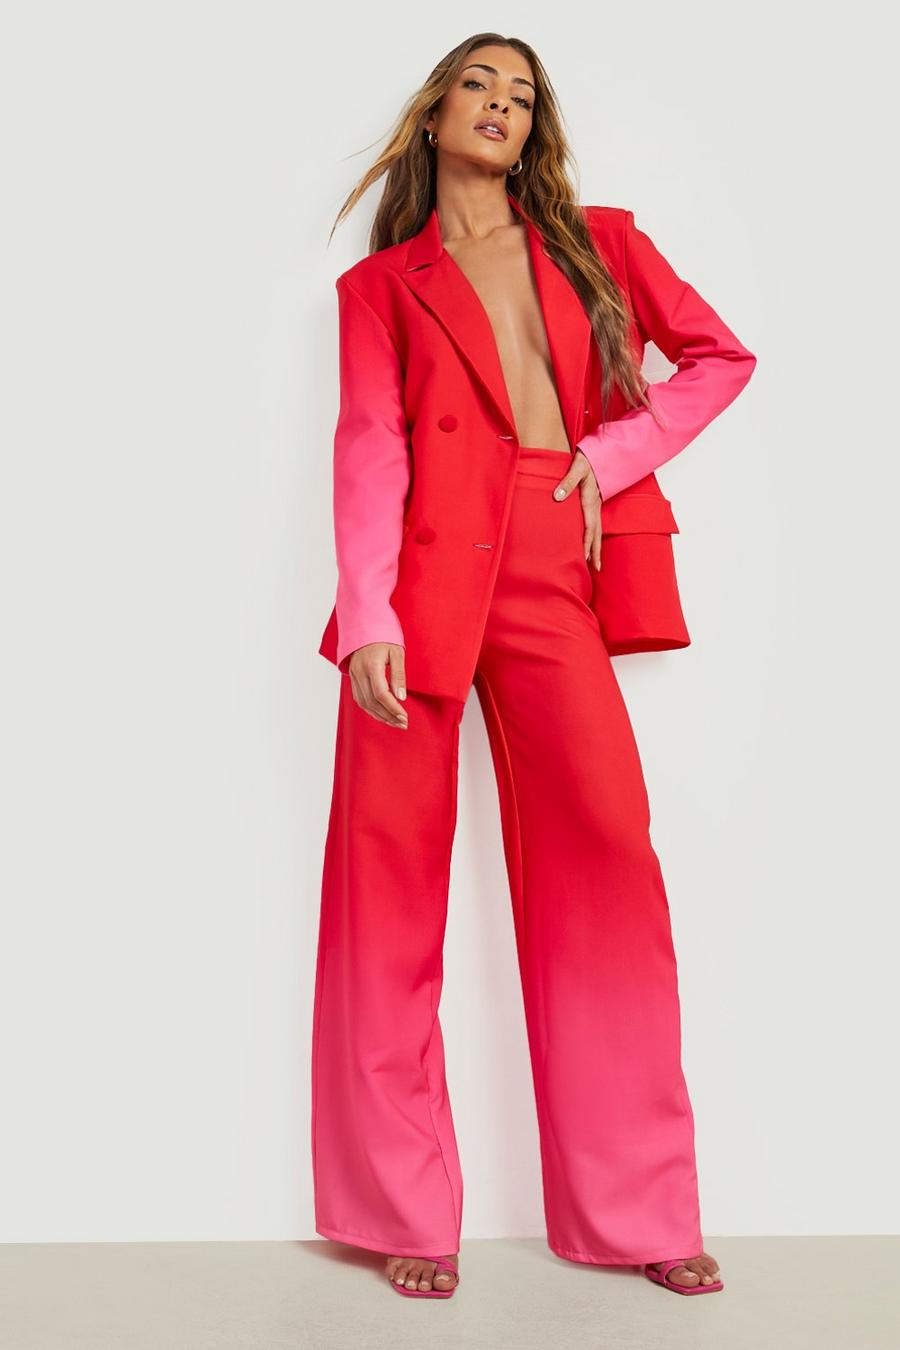 Weite Hose mit Farbverlauf, Hot pink rosa image number 1